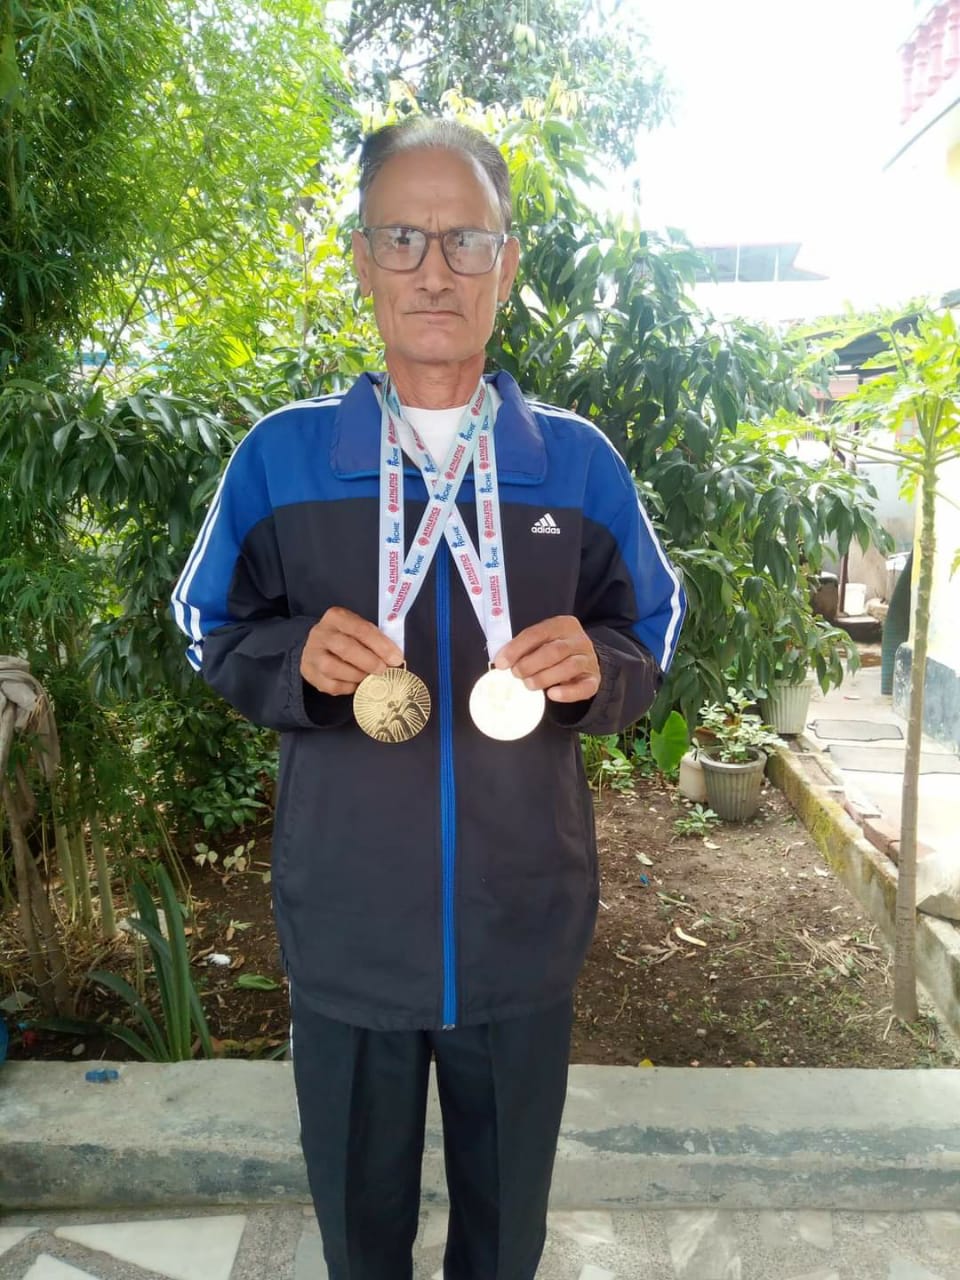 विकास नगर उत्‍तराखंड न्यूज़ : टीकम सिंह पंवार ने 5000 मीटर दौड़ और 2000 मीटर दौड़ में दो स्वर्ण पदक हासिल किए।